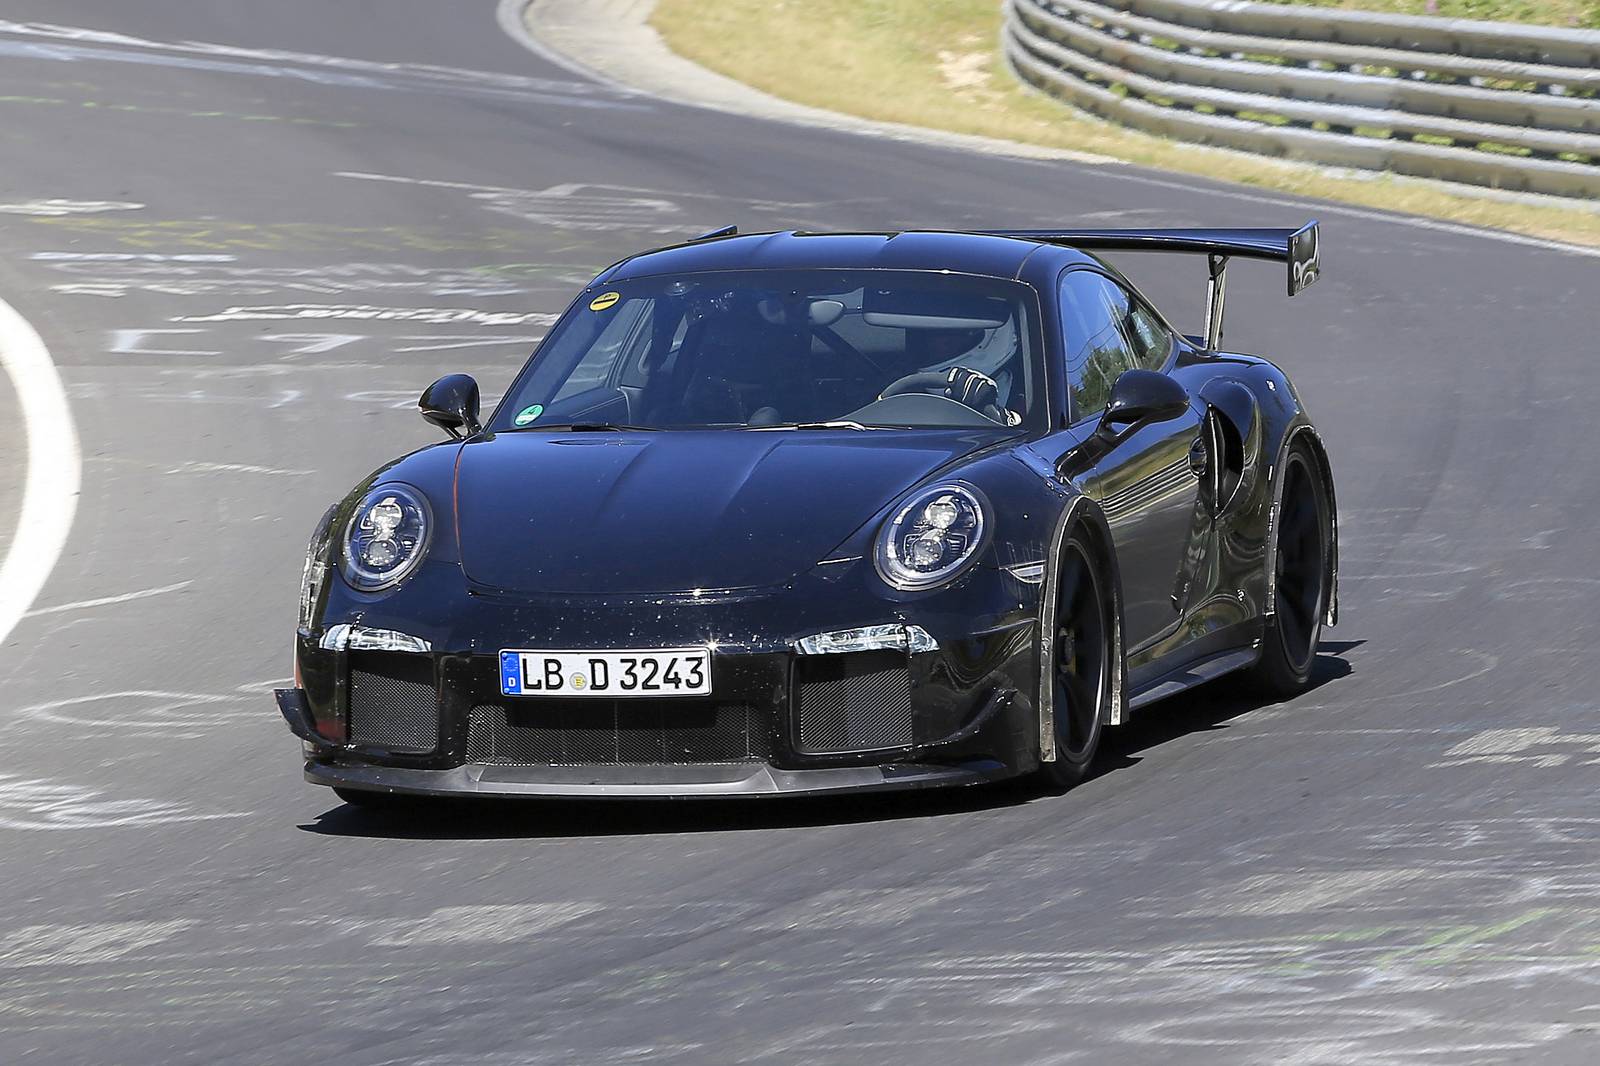 Долгожданный 2017 Porsche 911 GT2 был замечен на тестировании на Нюрбургринге перед его дебютом на Парижском автосалоне 2016 в октябре. Глядя на этот автомобиль, мы можем с уверенностью сказать, что GT2 991 поколения будет отличаться большим задним а